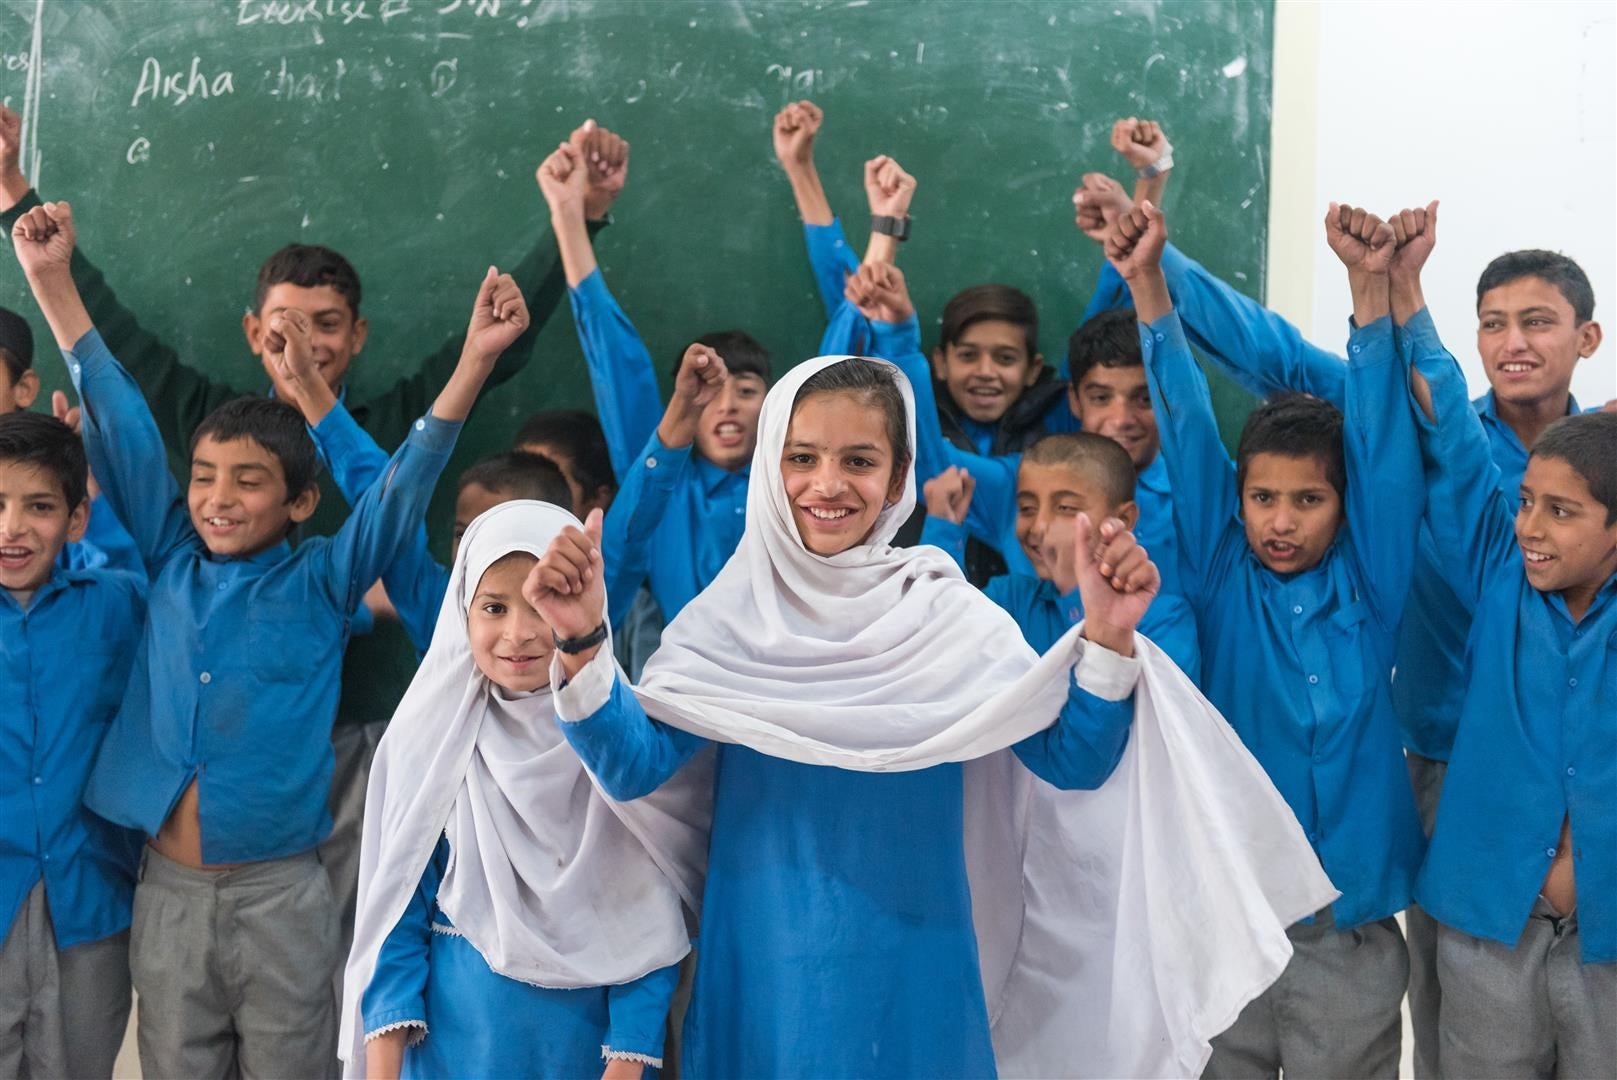 Une classe d'école au Pakistan se tient devant un tableau noir et s'amuse.